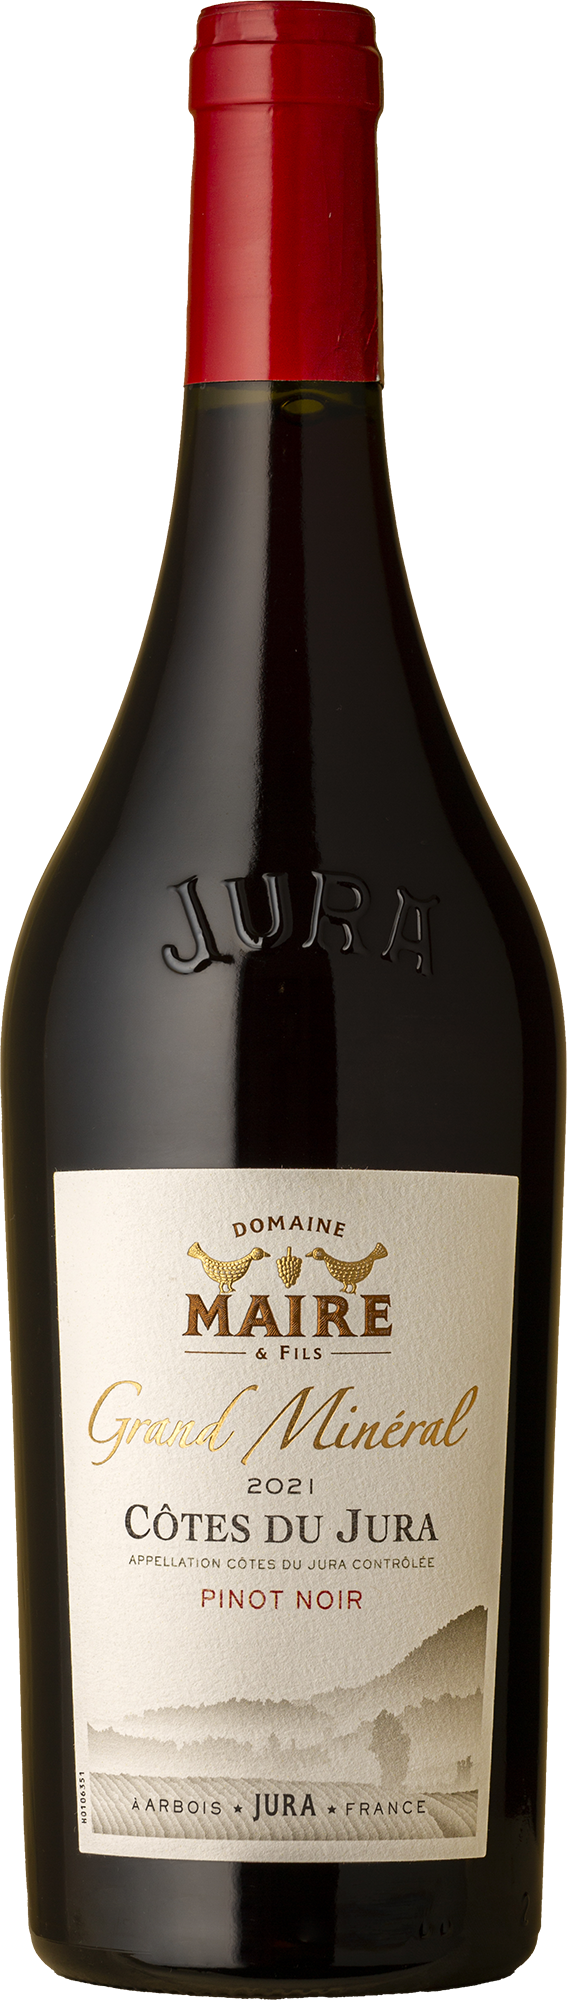 Domaine Maire & Fils - Grand Minéral Côtes du Jura Pinot Noir 2021 Red Wine